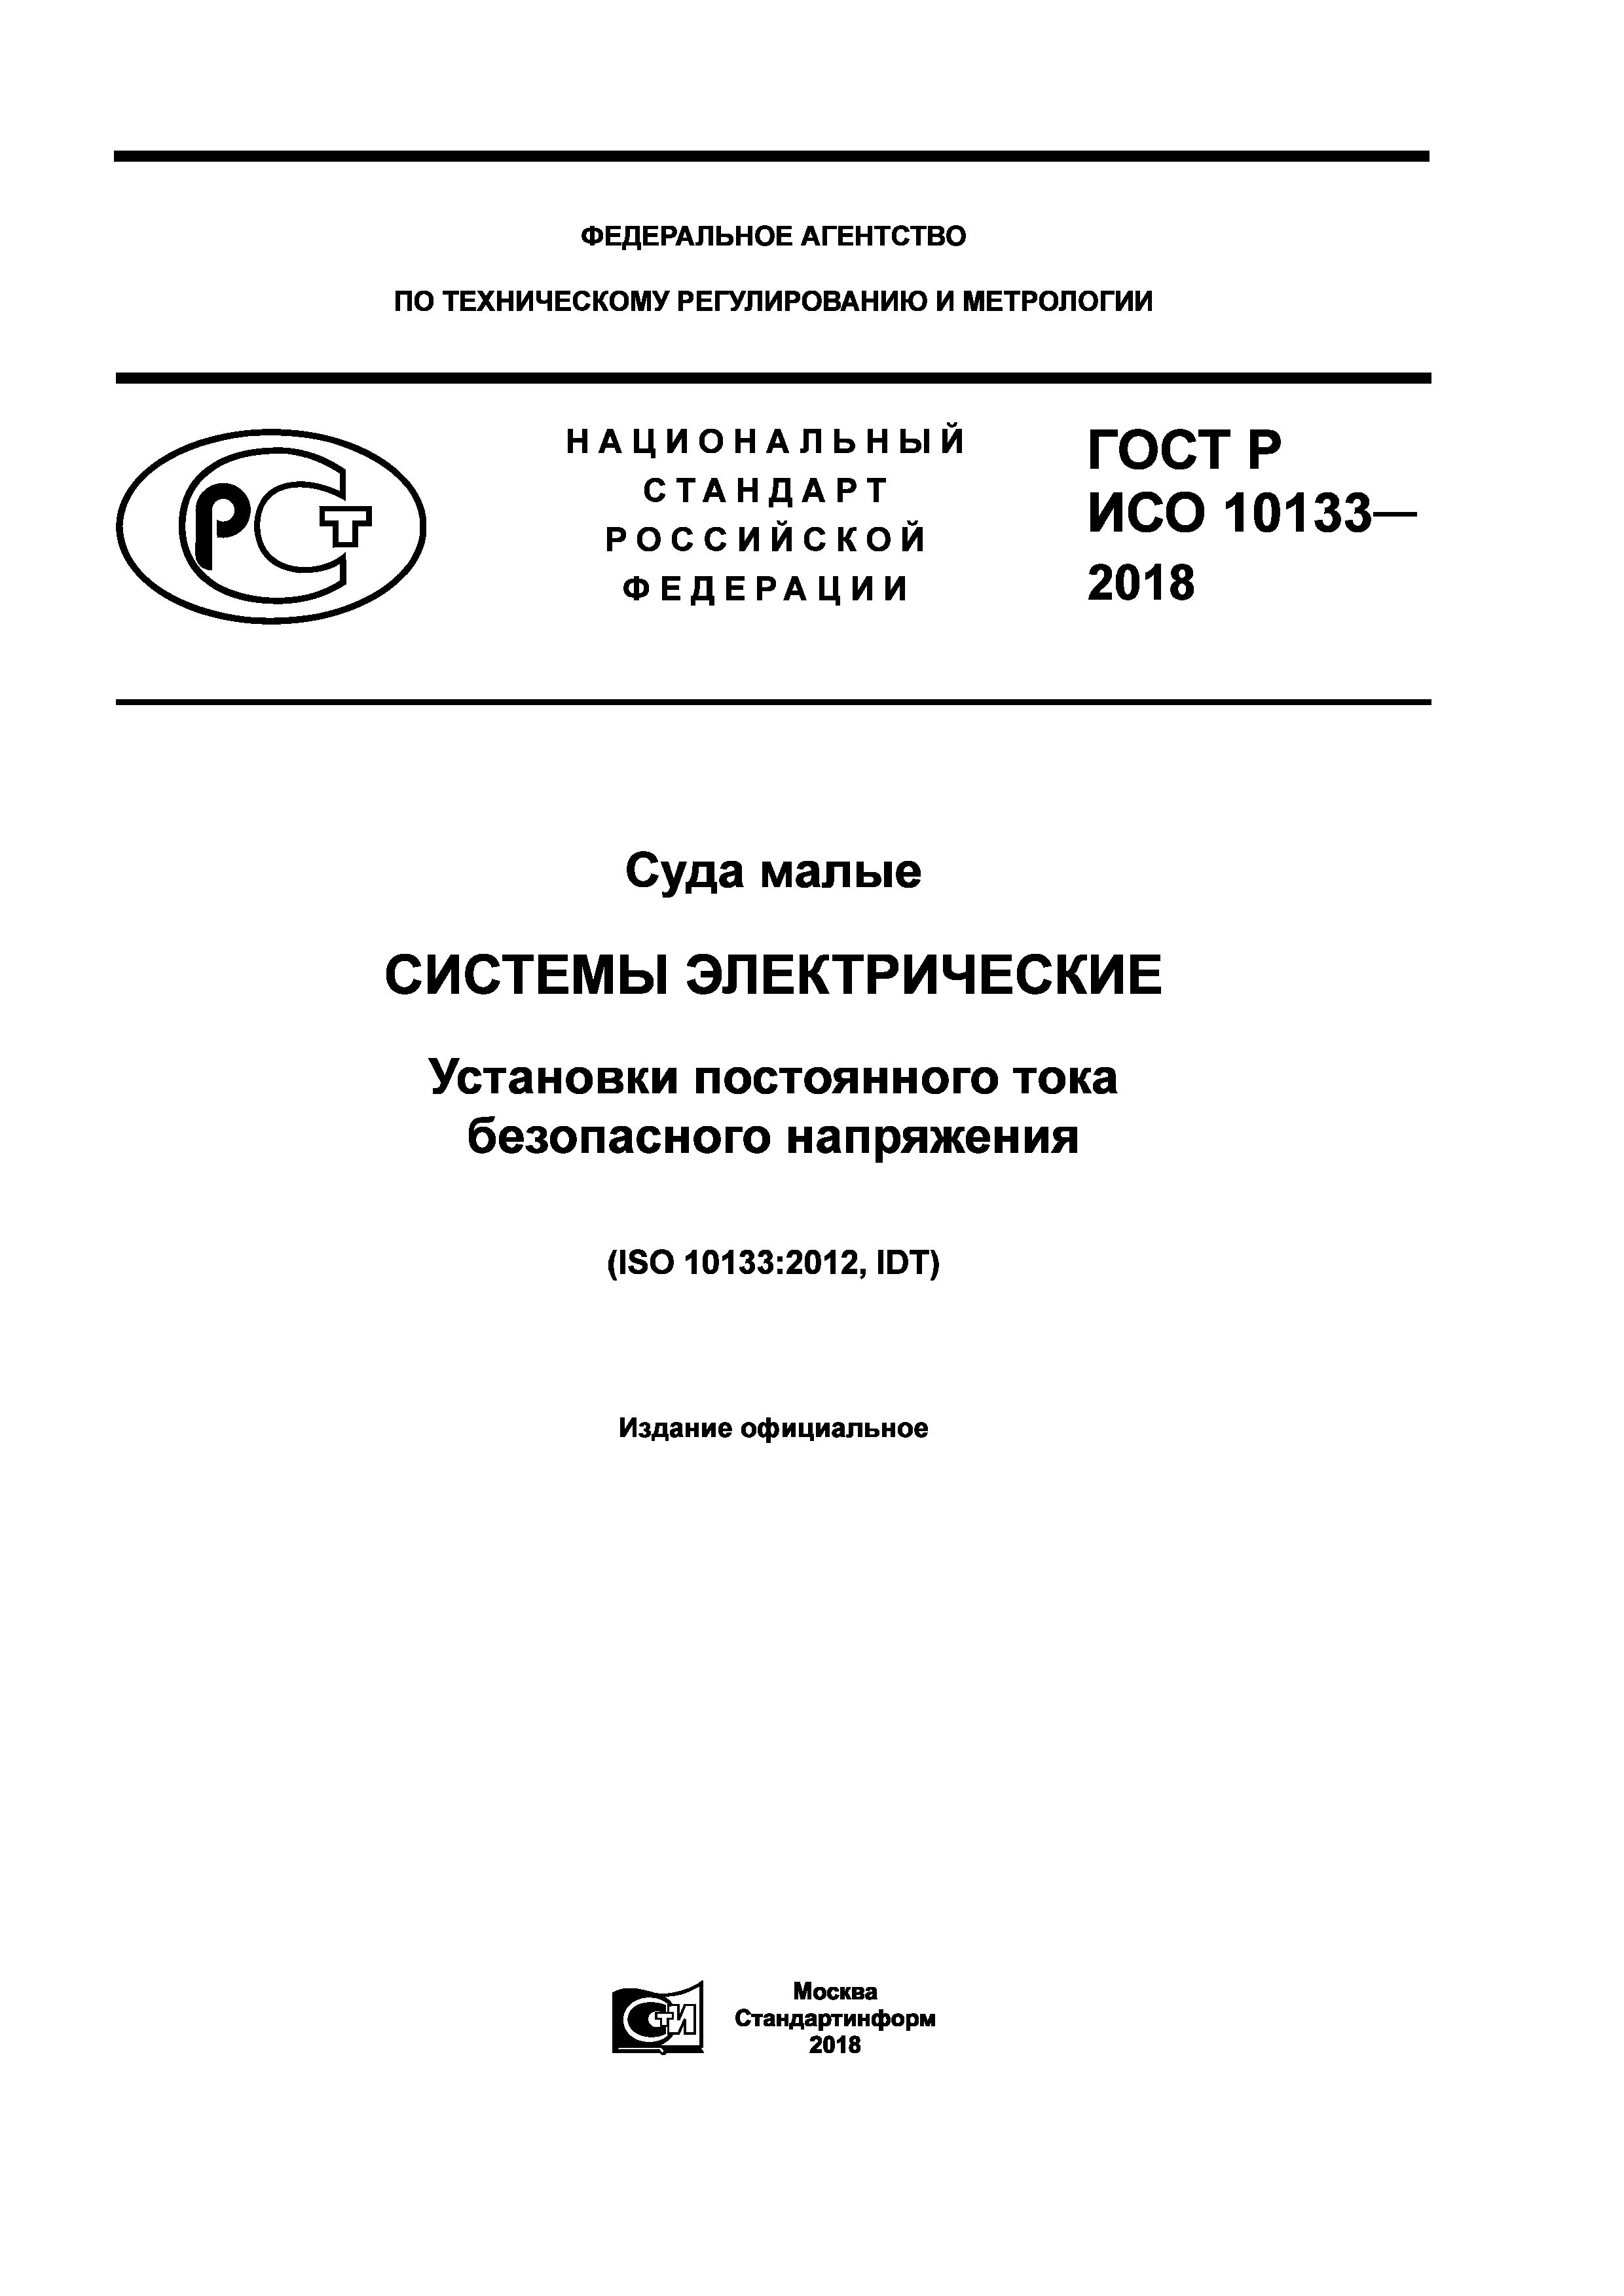 ГОСТ Р ИСО 10133-2018